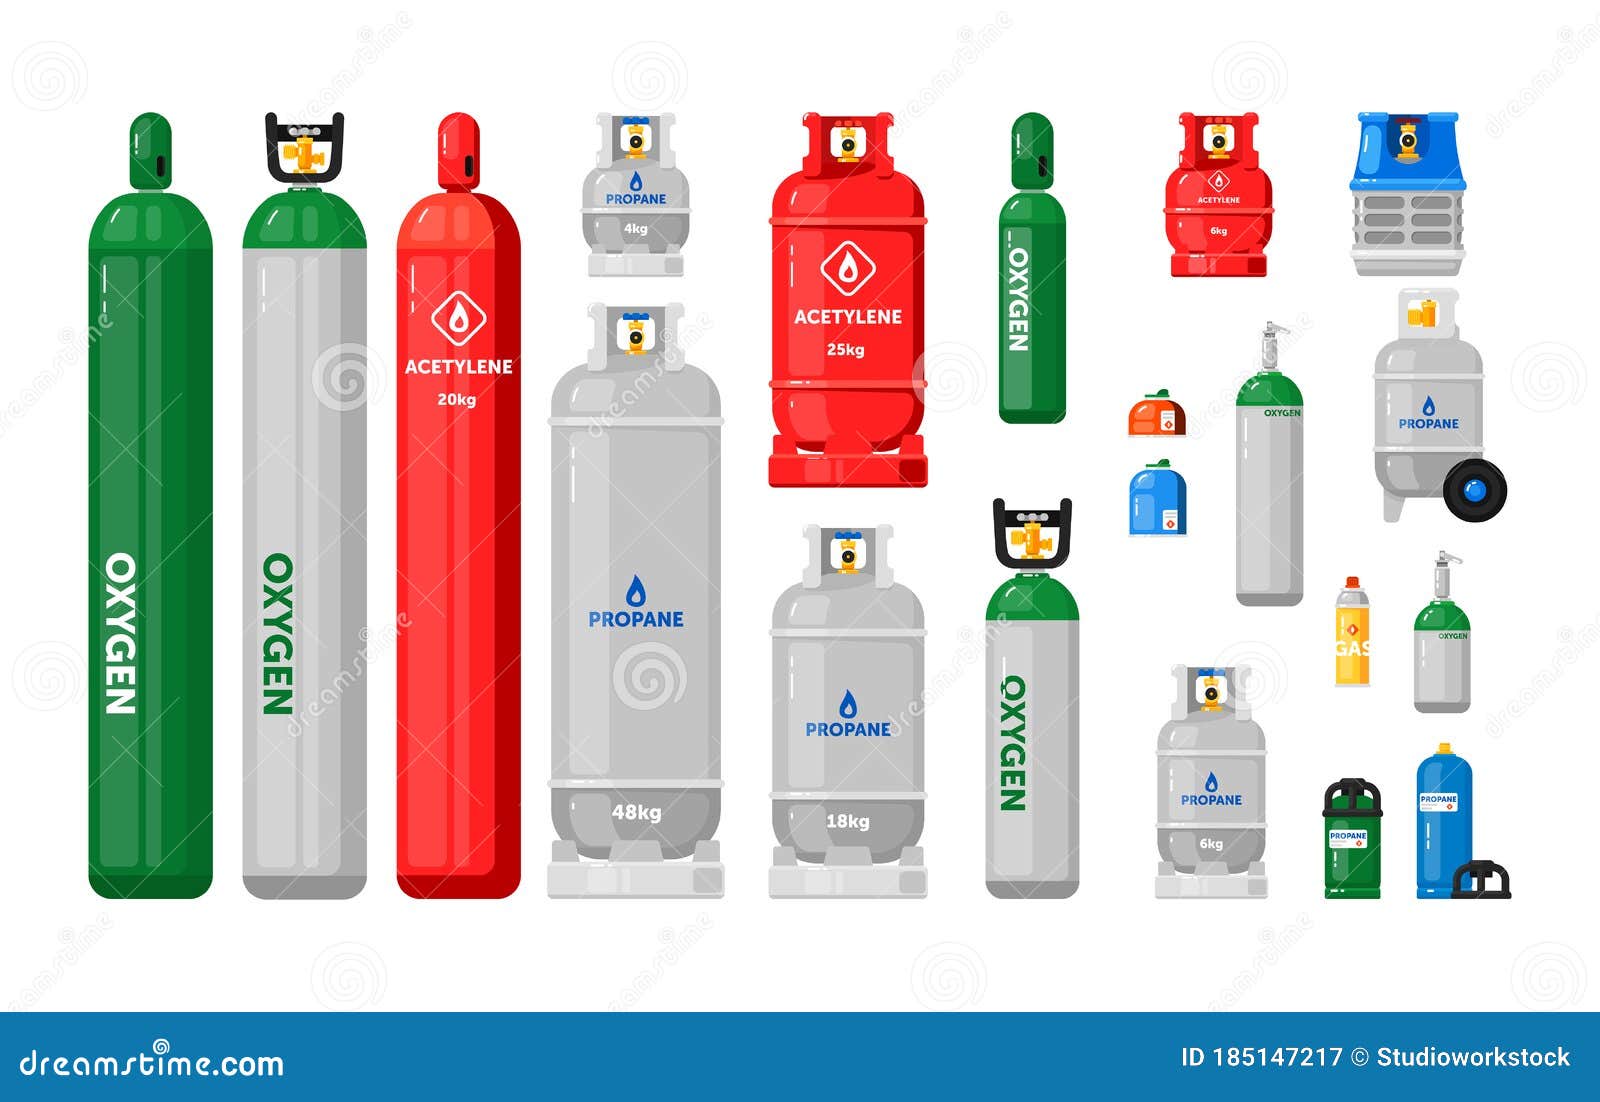 Gasflaschen. Metallbehälter Vektor Abbildung - Illustration von